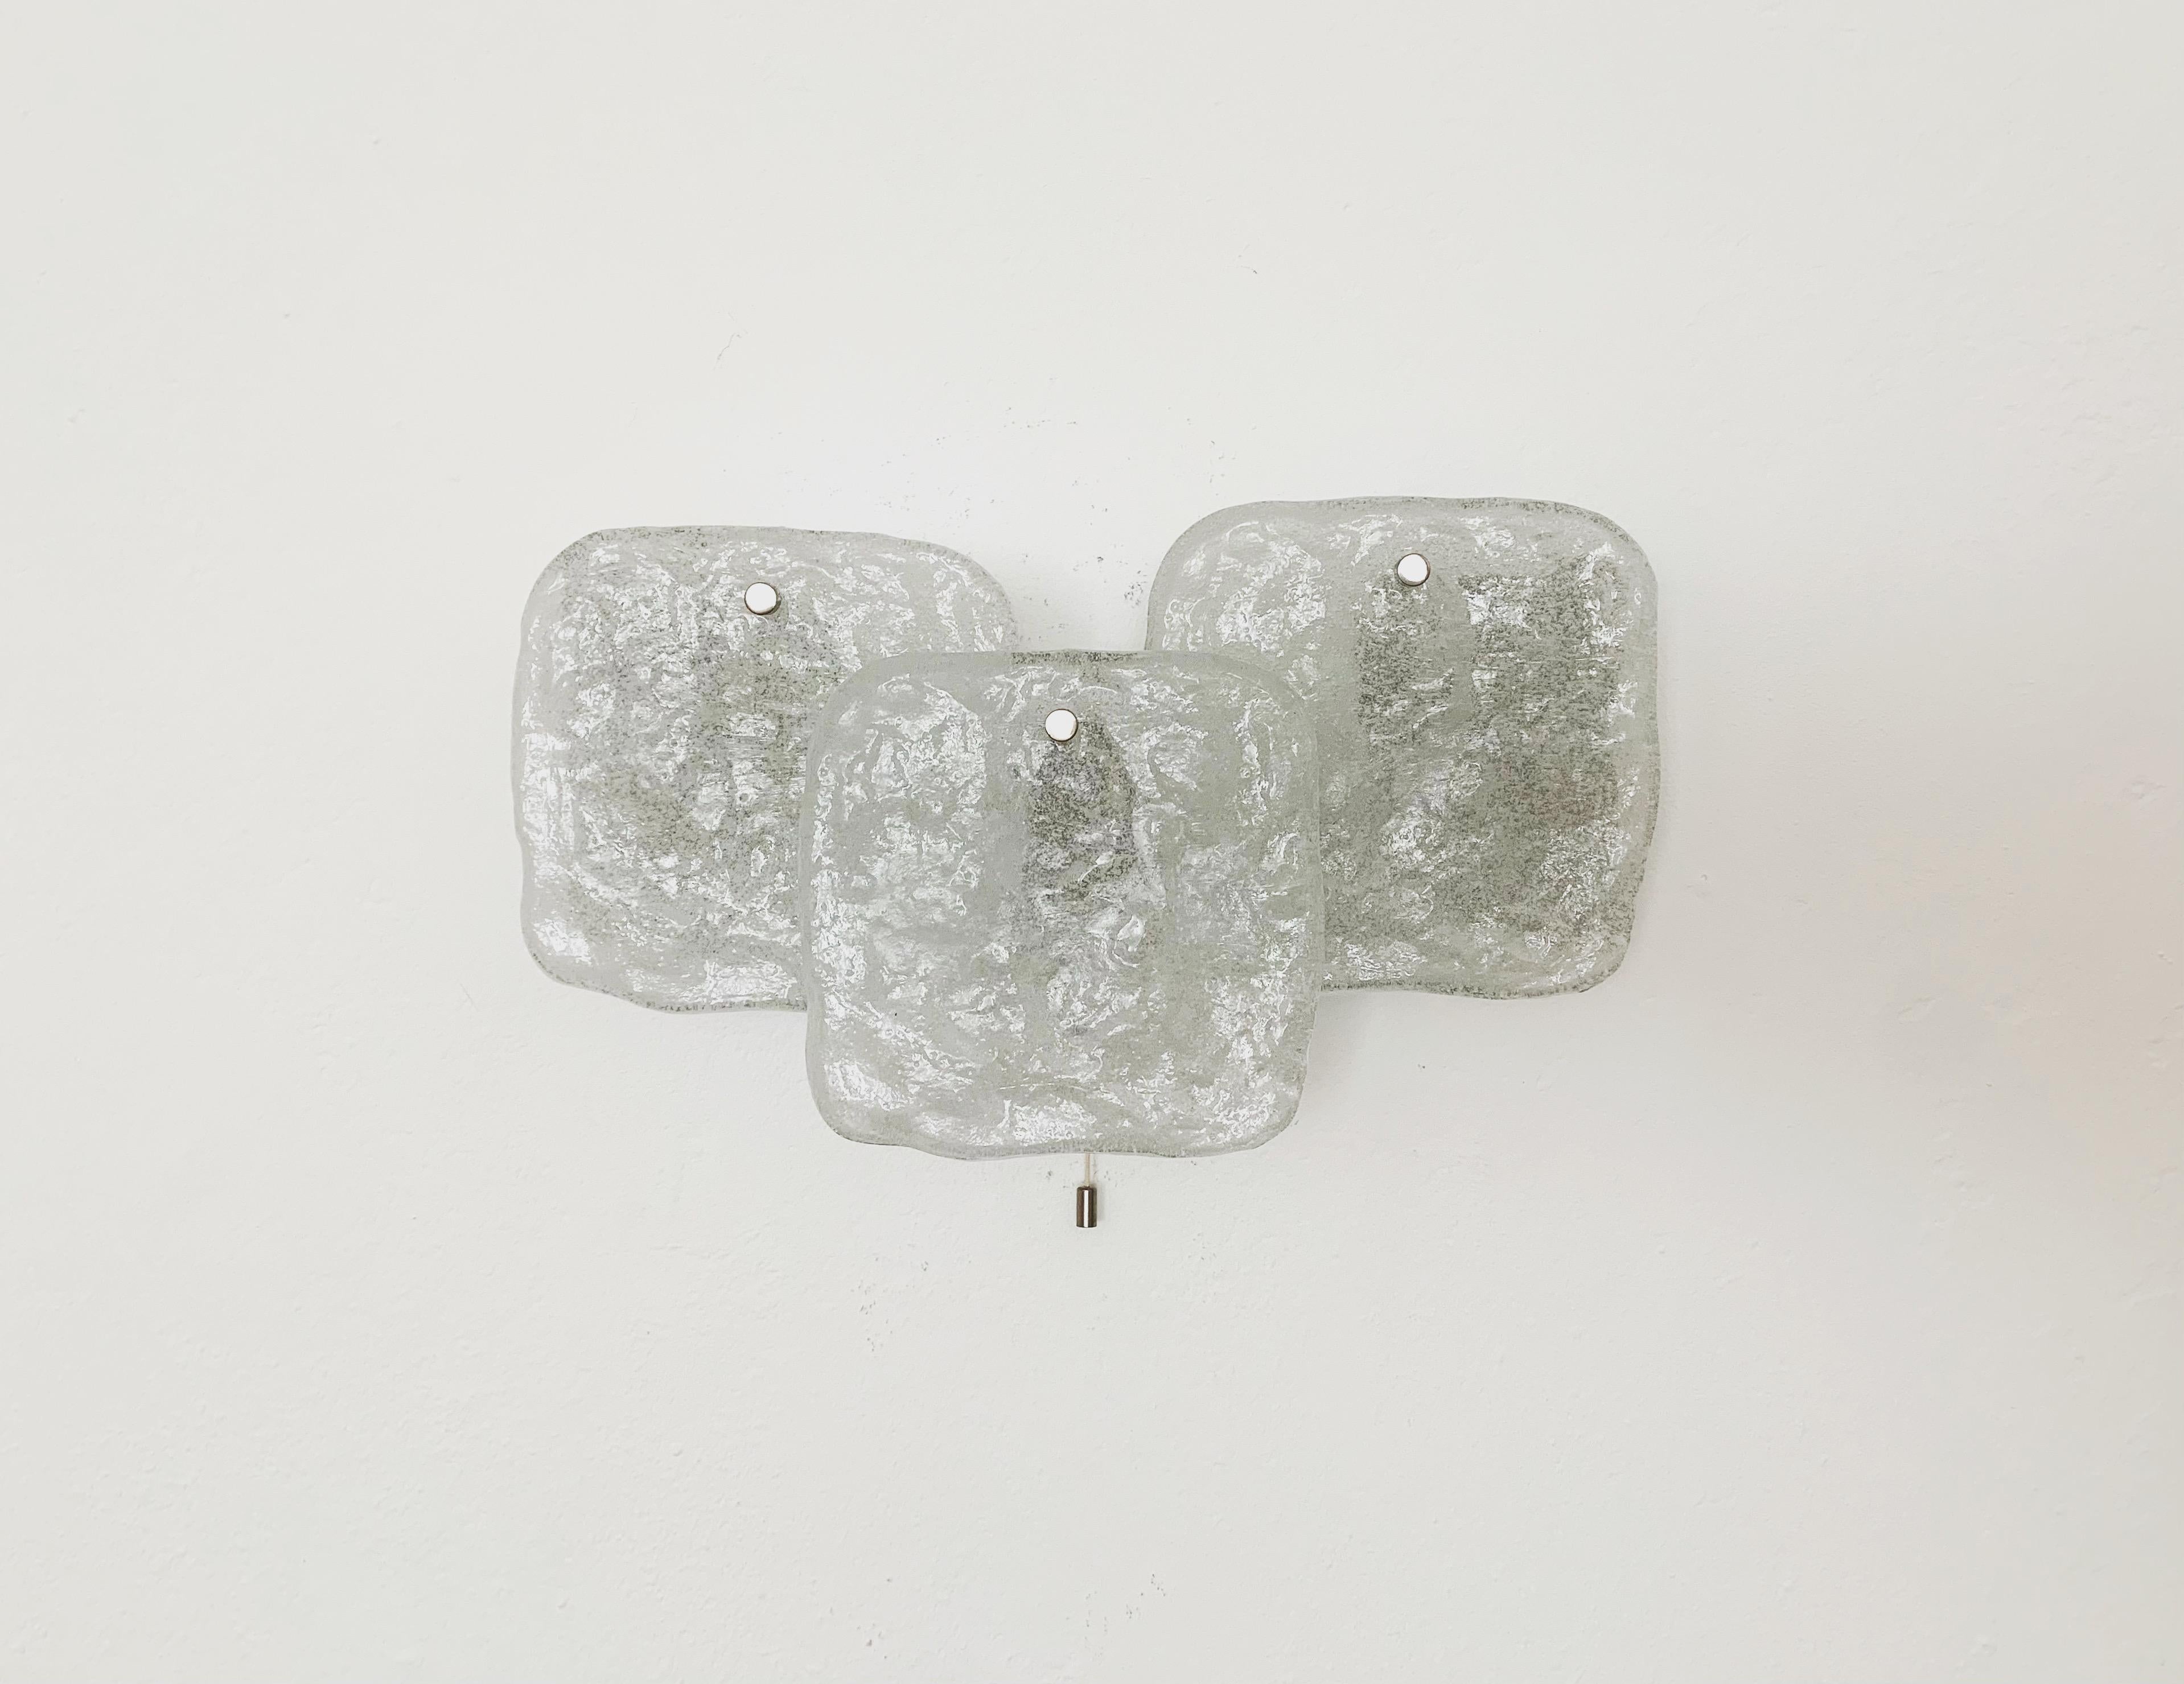 Wunderschöne Wandlampe aus Murano-Glas aus den 1960er Jahren.
Die 3 schweren Eisglaselemente verbreiten ein elegantes Licht.
Hohe Qualität.

Bedingung:

Sehr guter Vintage-Zustand mit leichten altersentsprechenden Gebrauchsspuren.
Die Metallteile